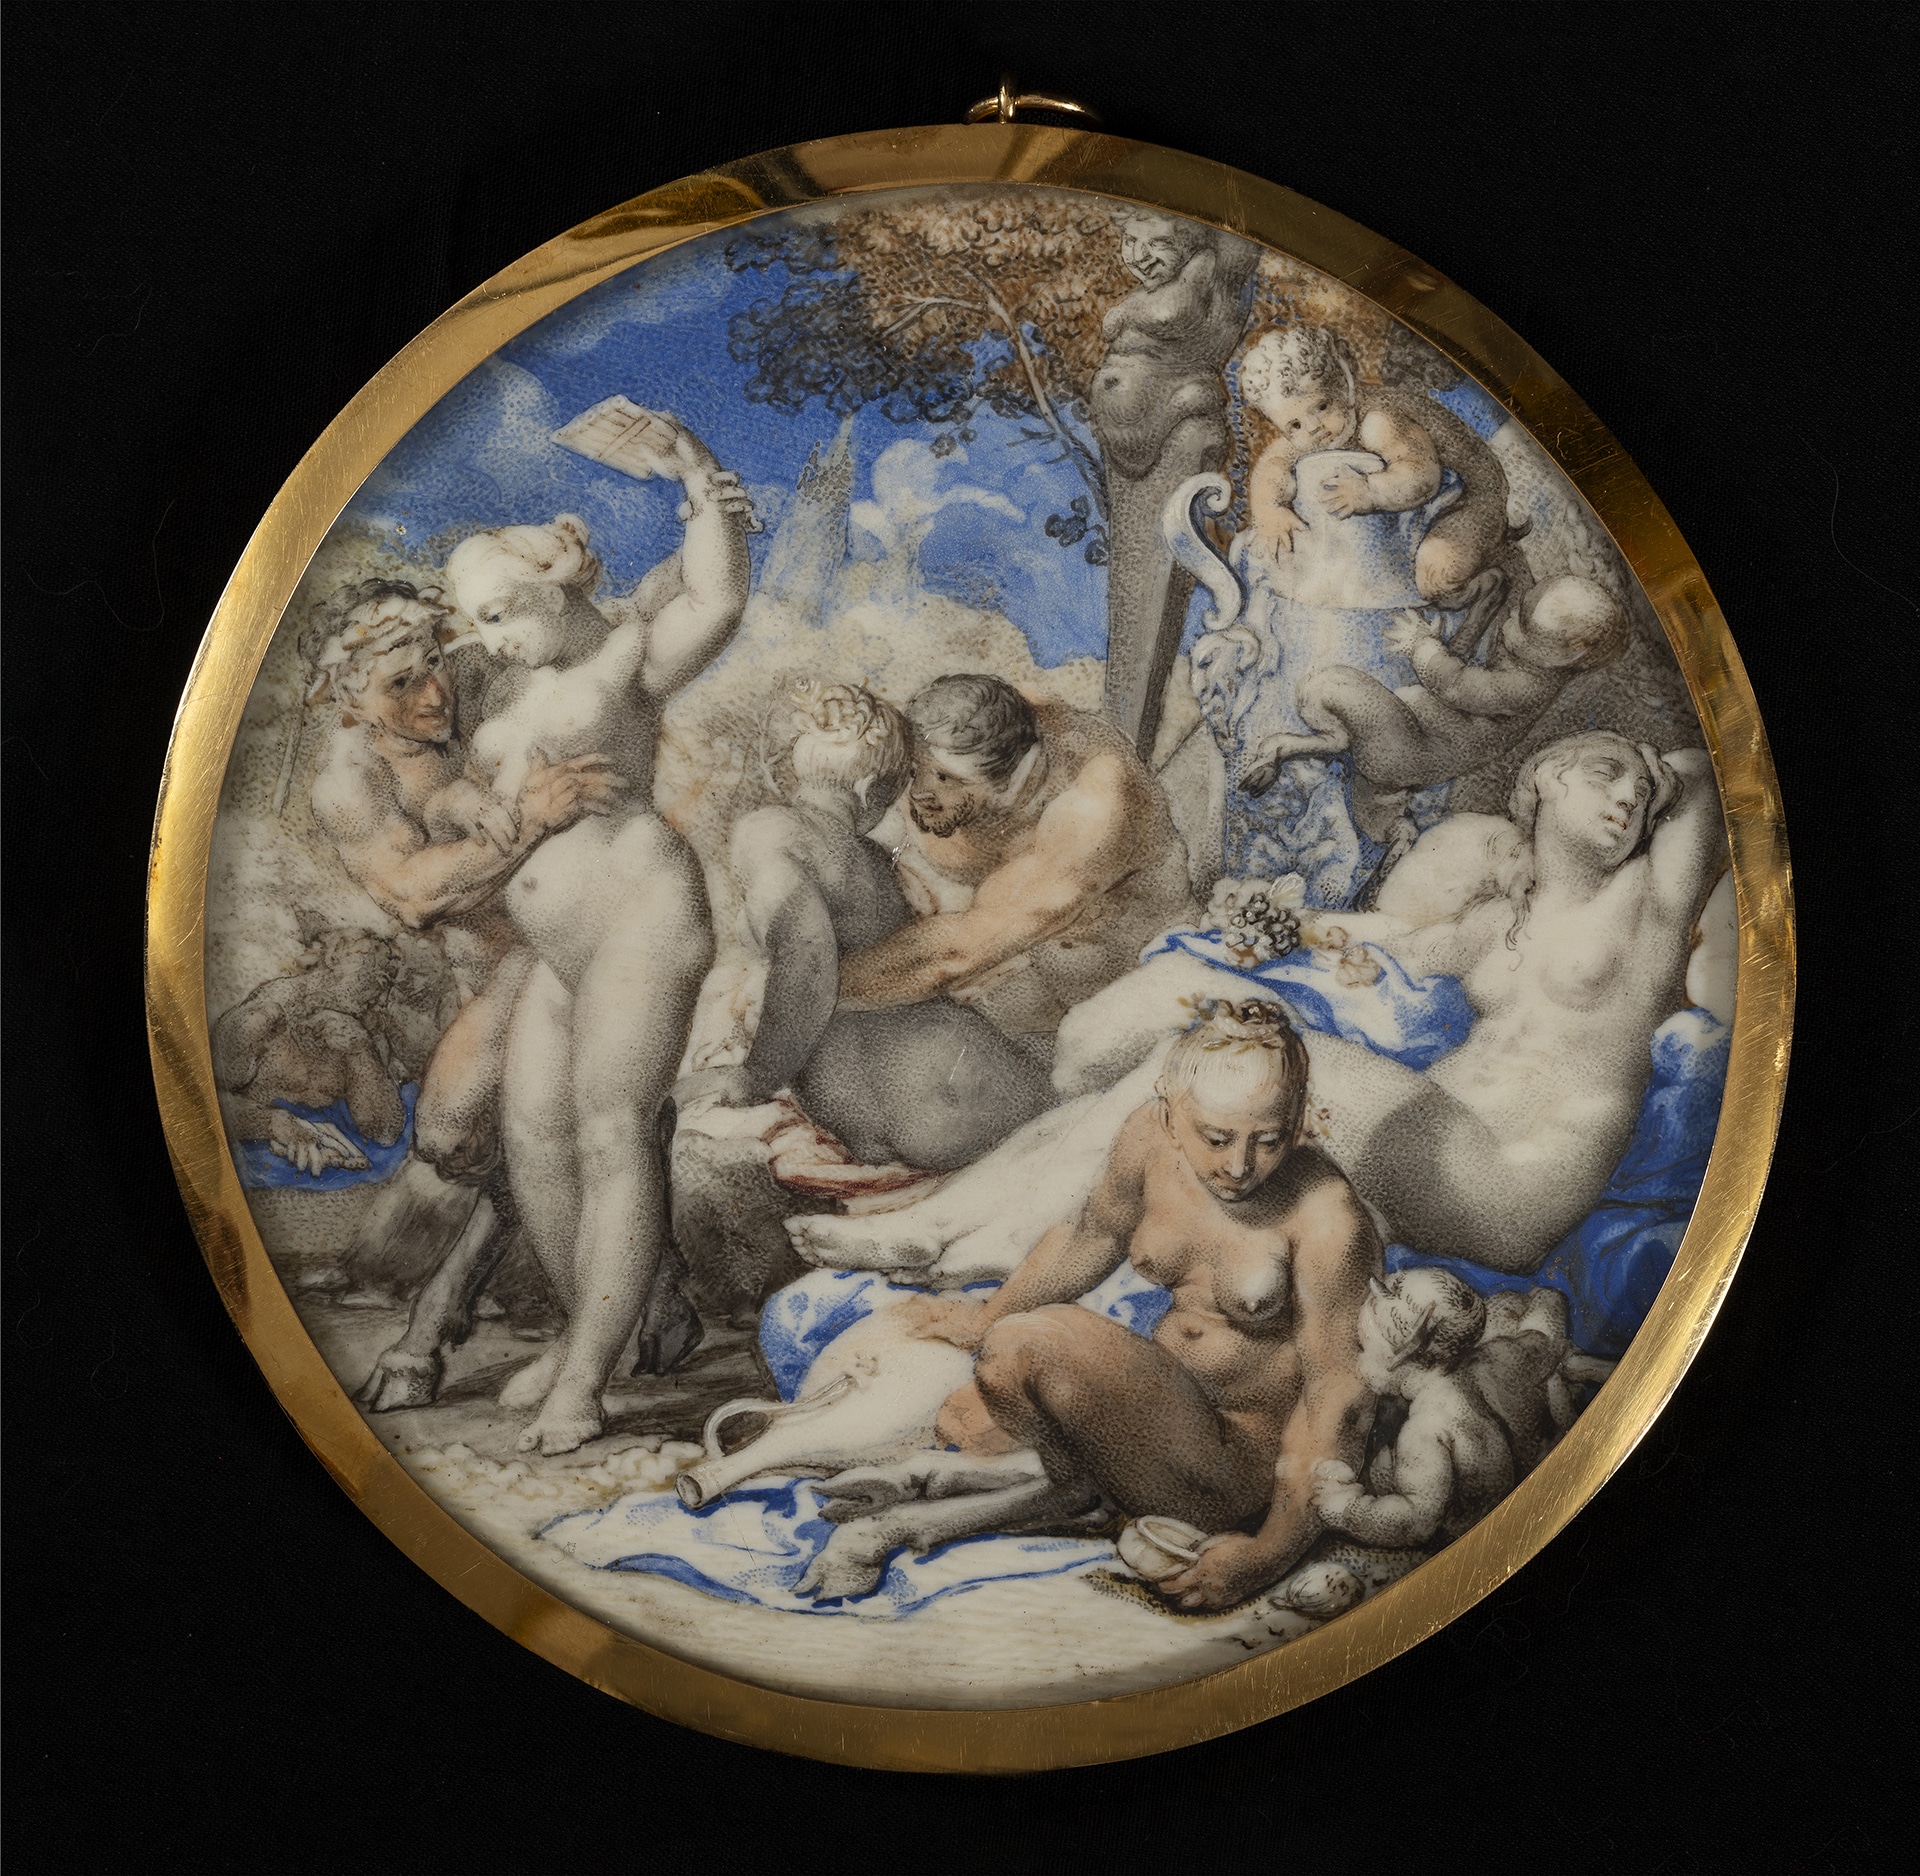 Rosalba Carriera, Baccanale, acquerello e gouache su avorio, cm 11 Ø (tondo), provenienza: castello Re di Danimarca 